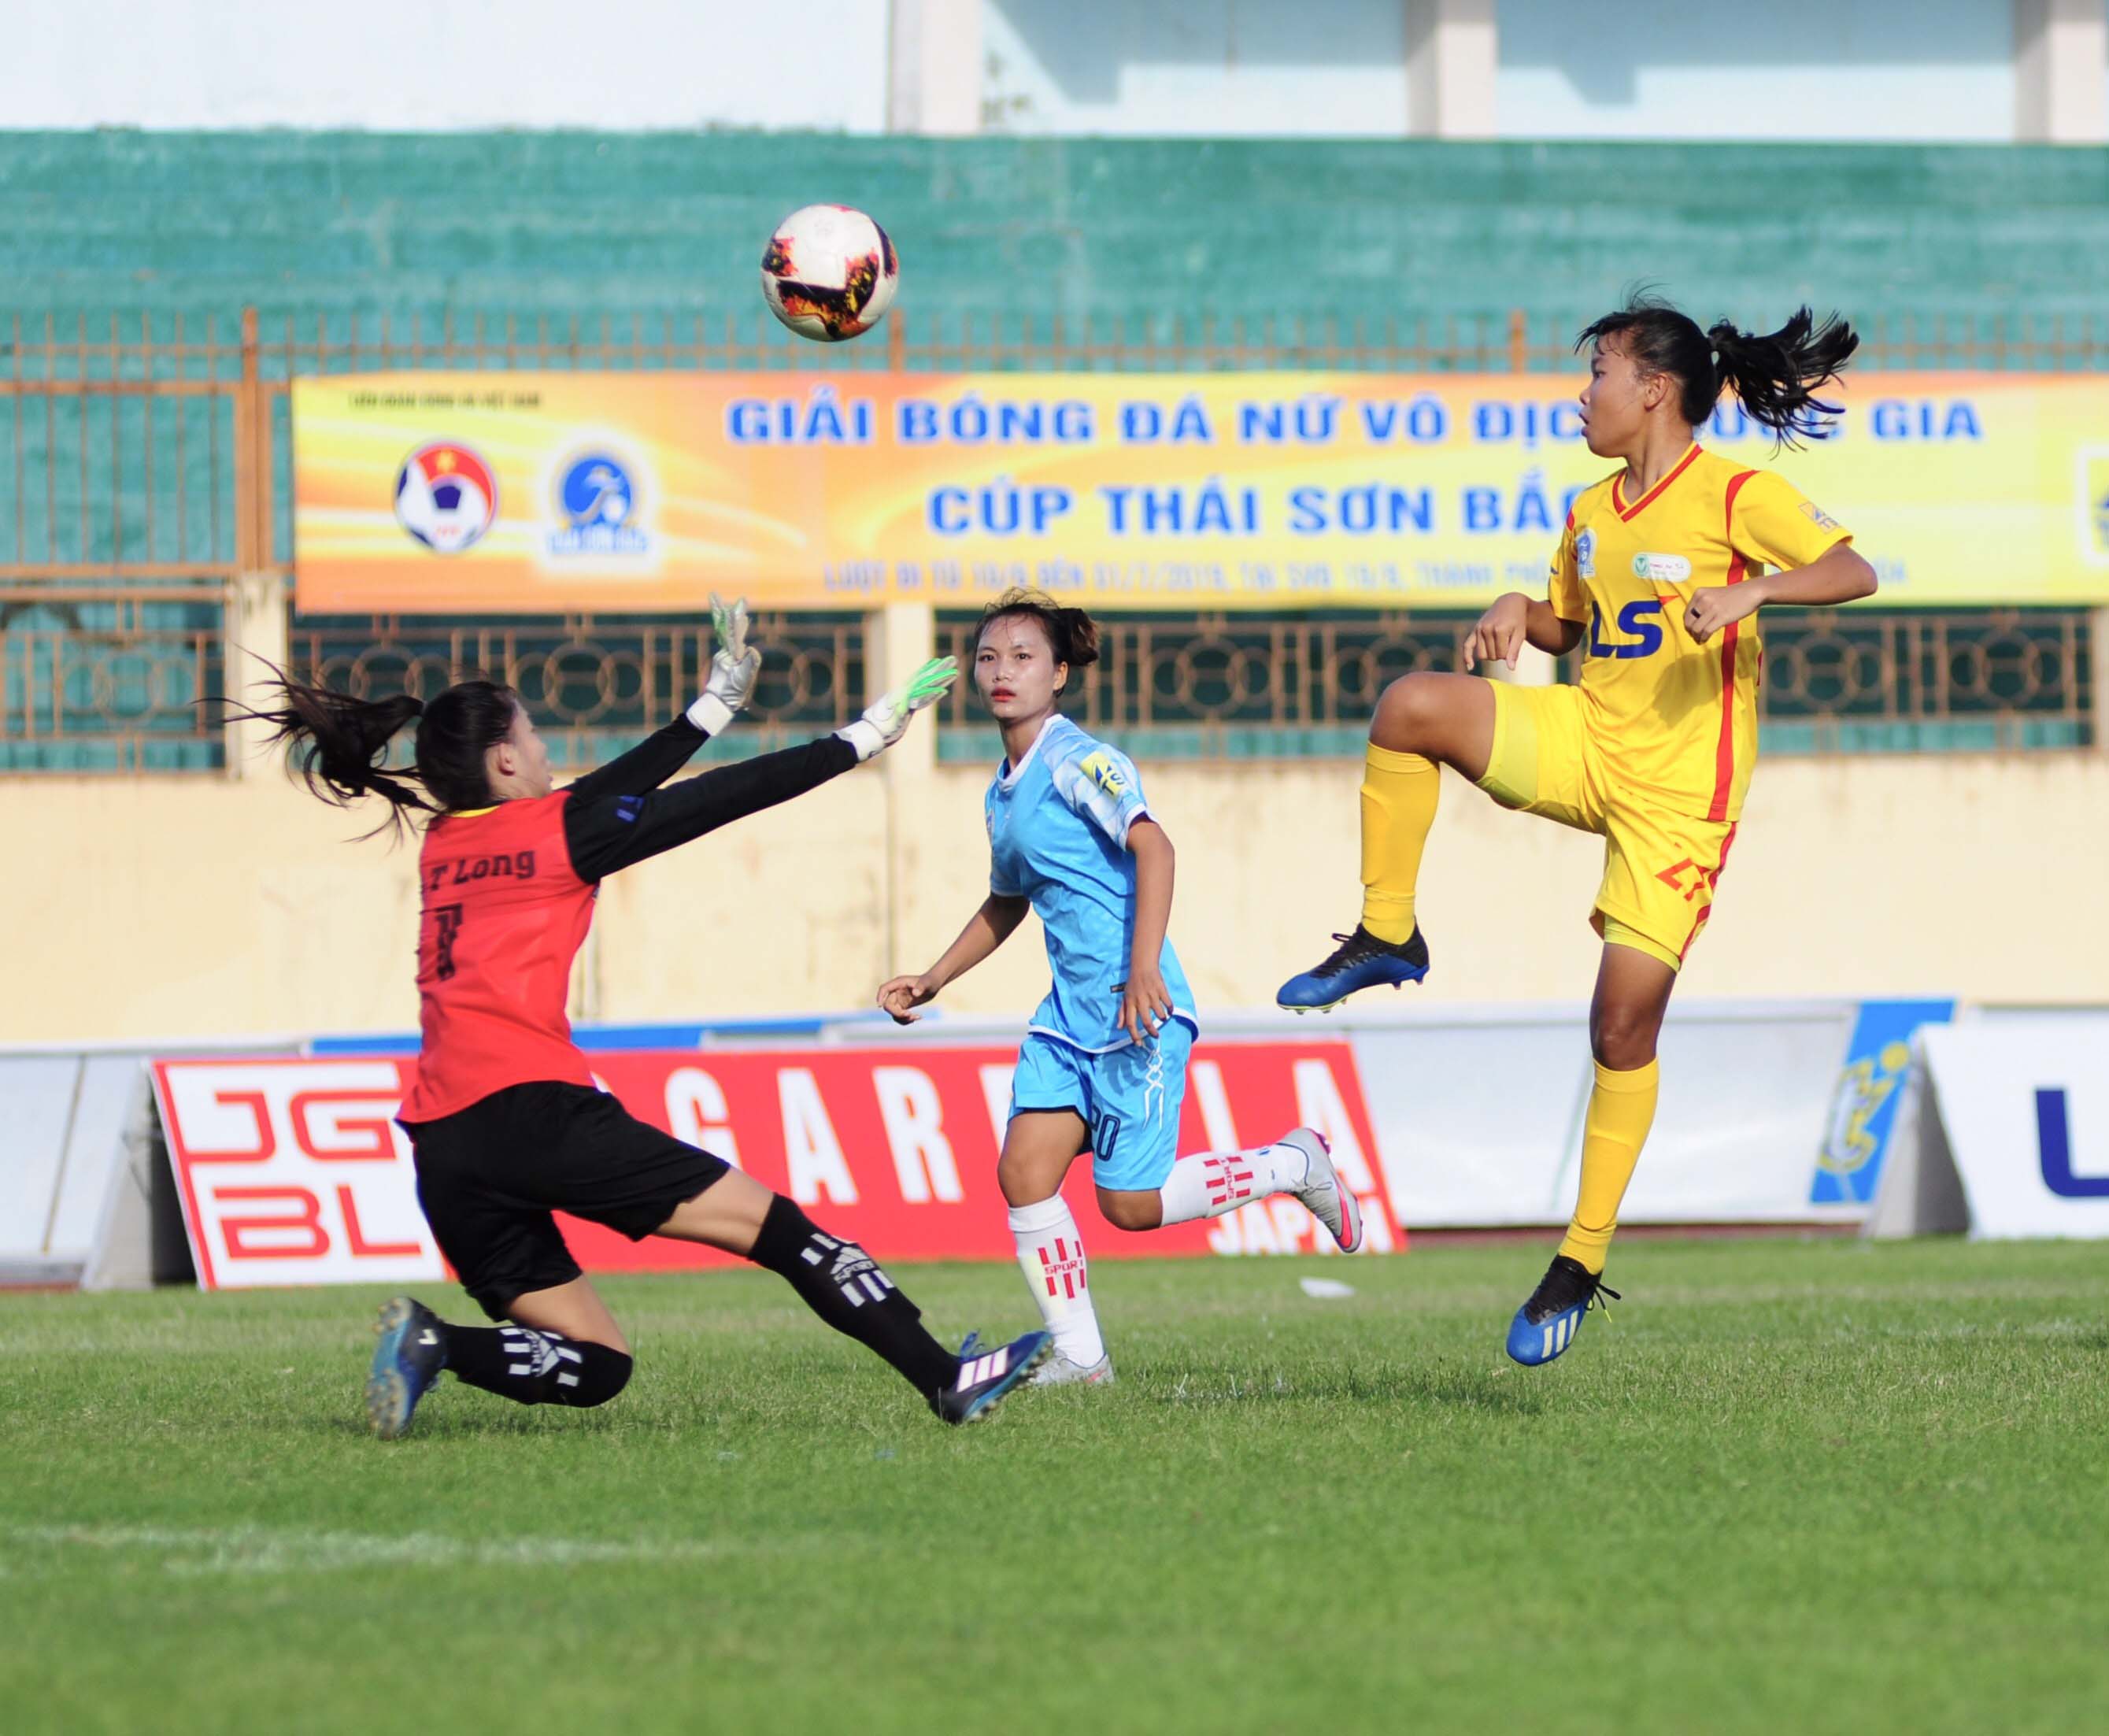 Chuyện bóng đá nữ ở Sơn La: Nỗi ám ảnh cầu thủ bỏ đội đi lấy chồng, làm công nhân